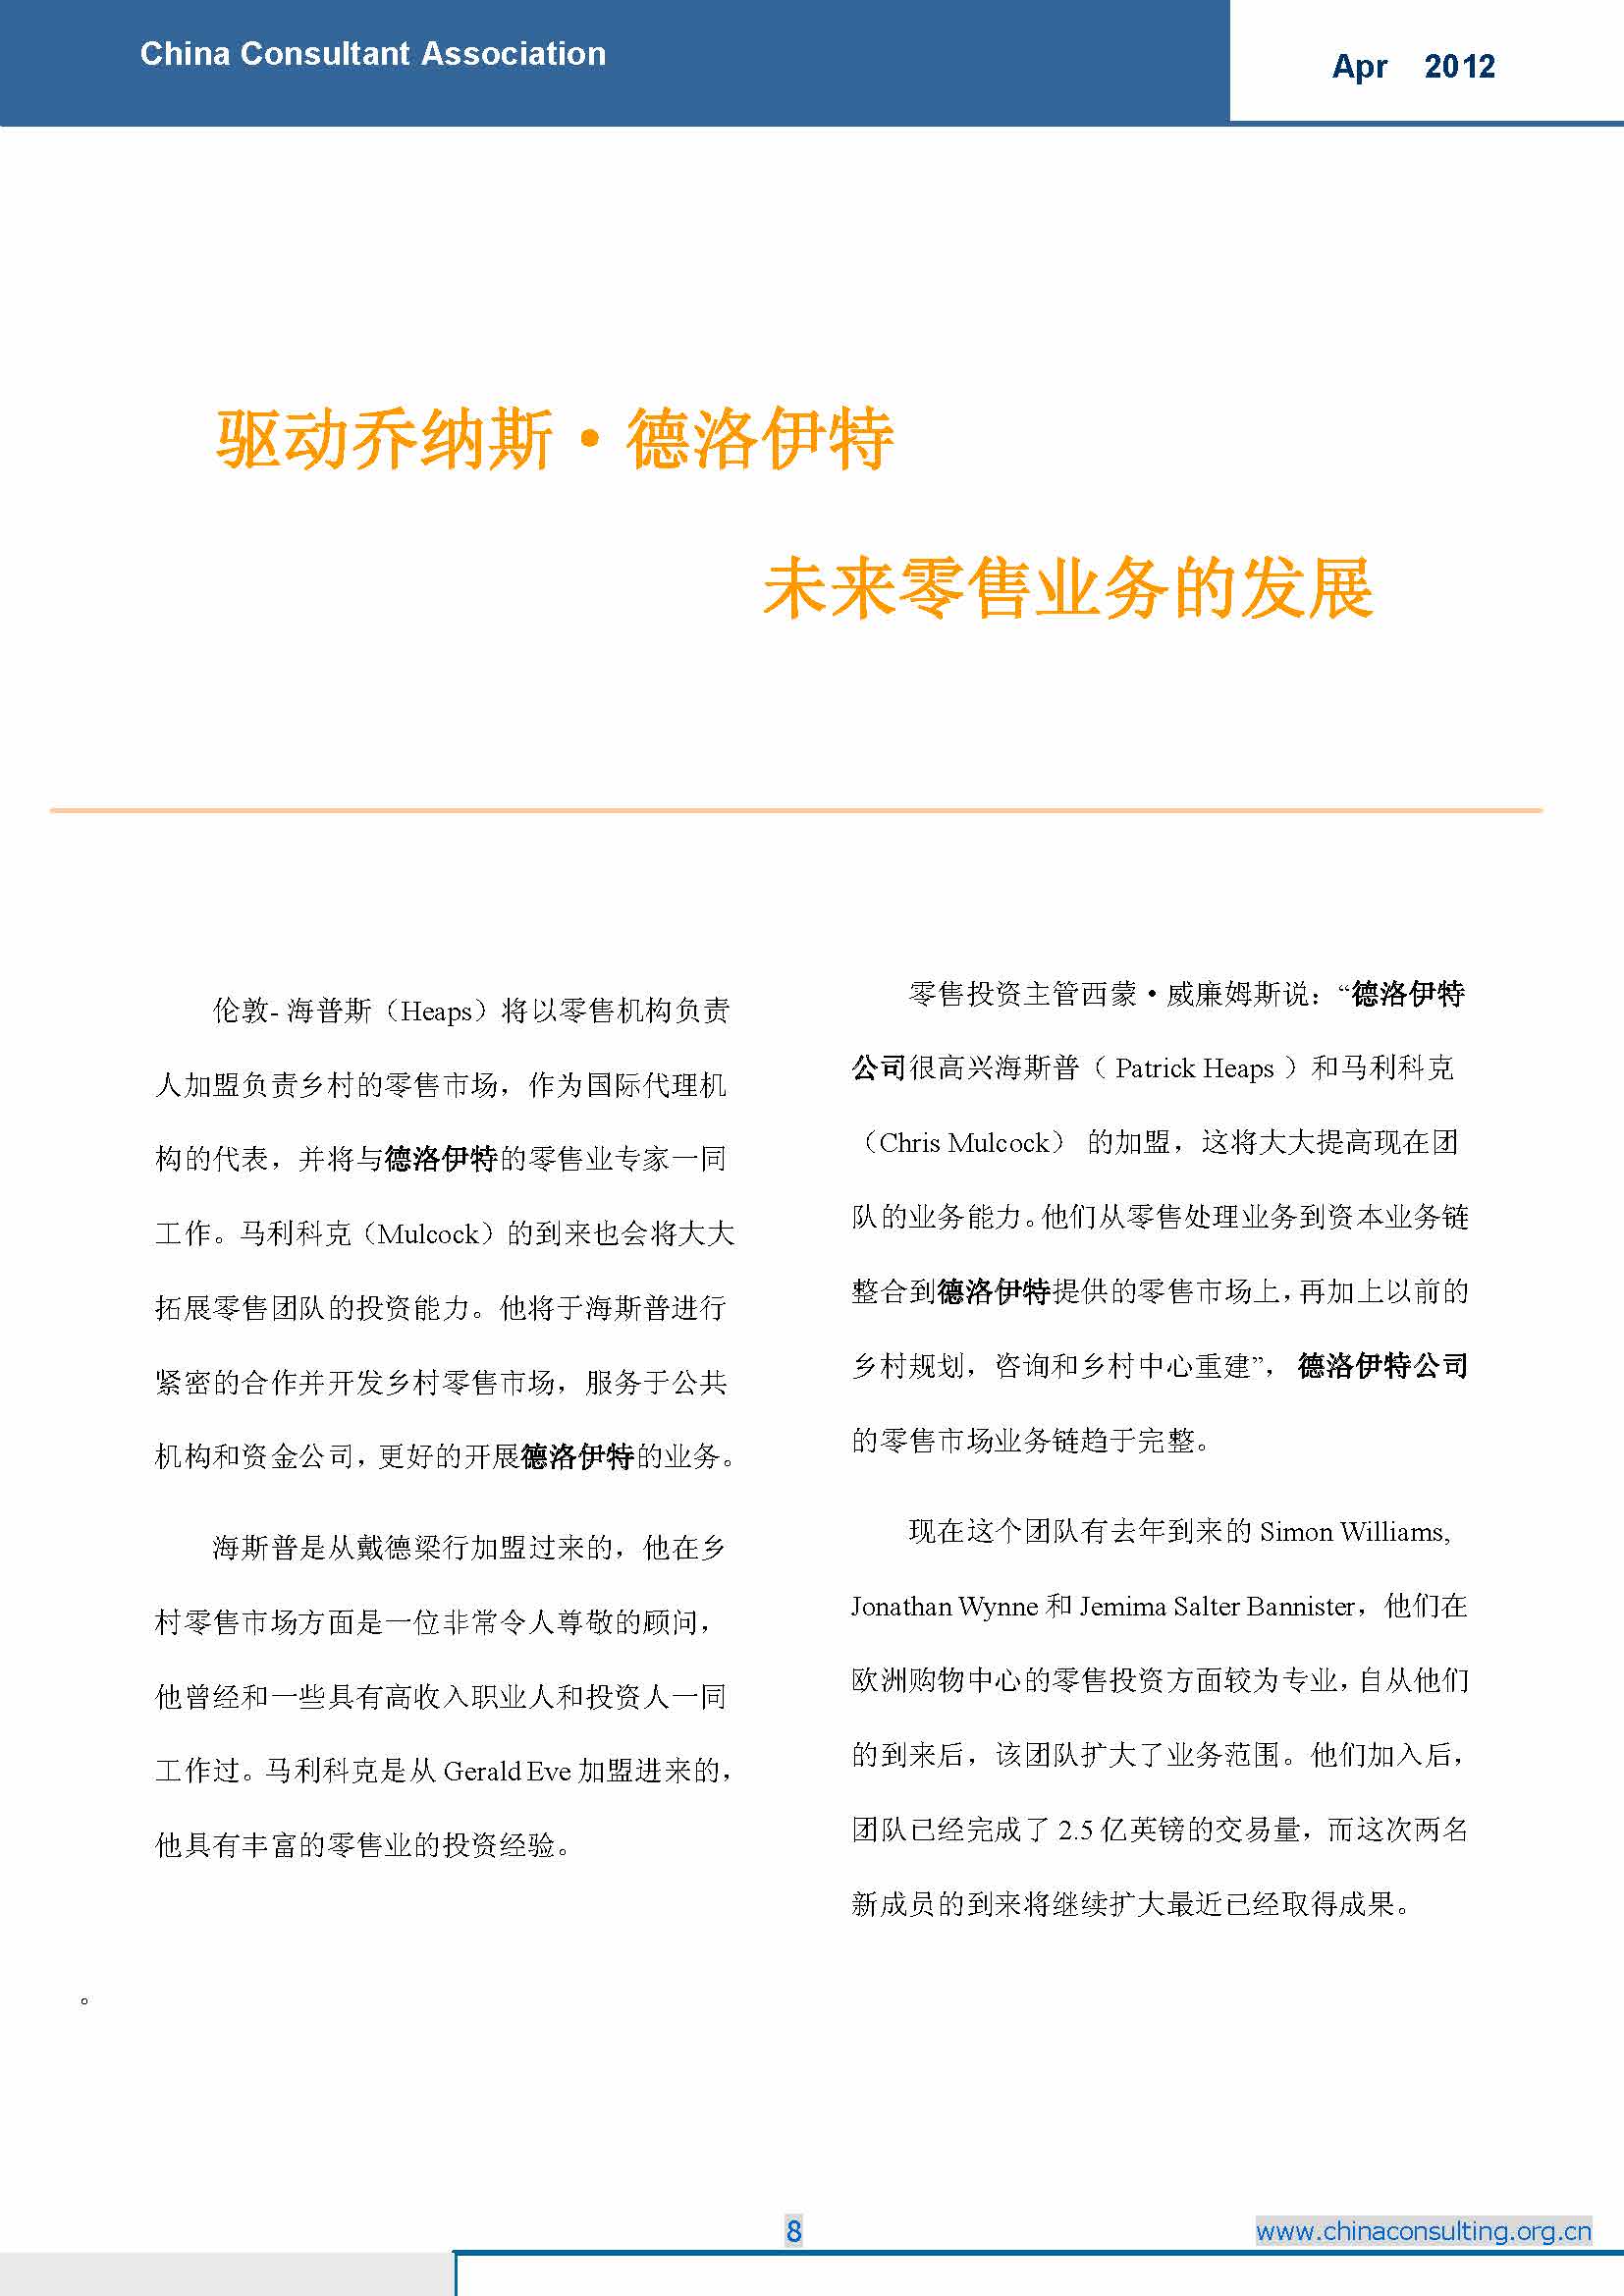 6中国科技咨询协会国际快讯（第六期）_页面_10.jpg